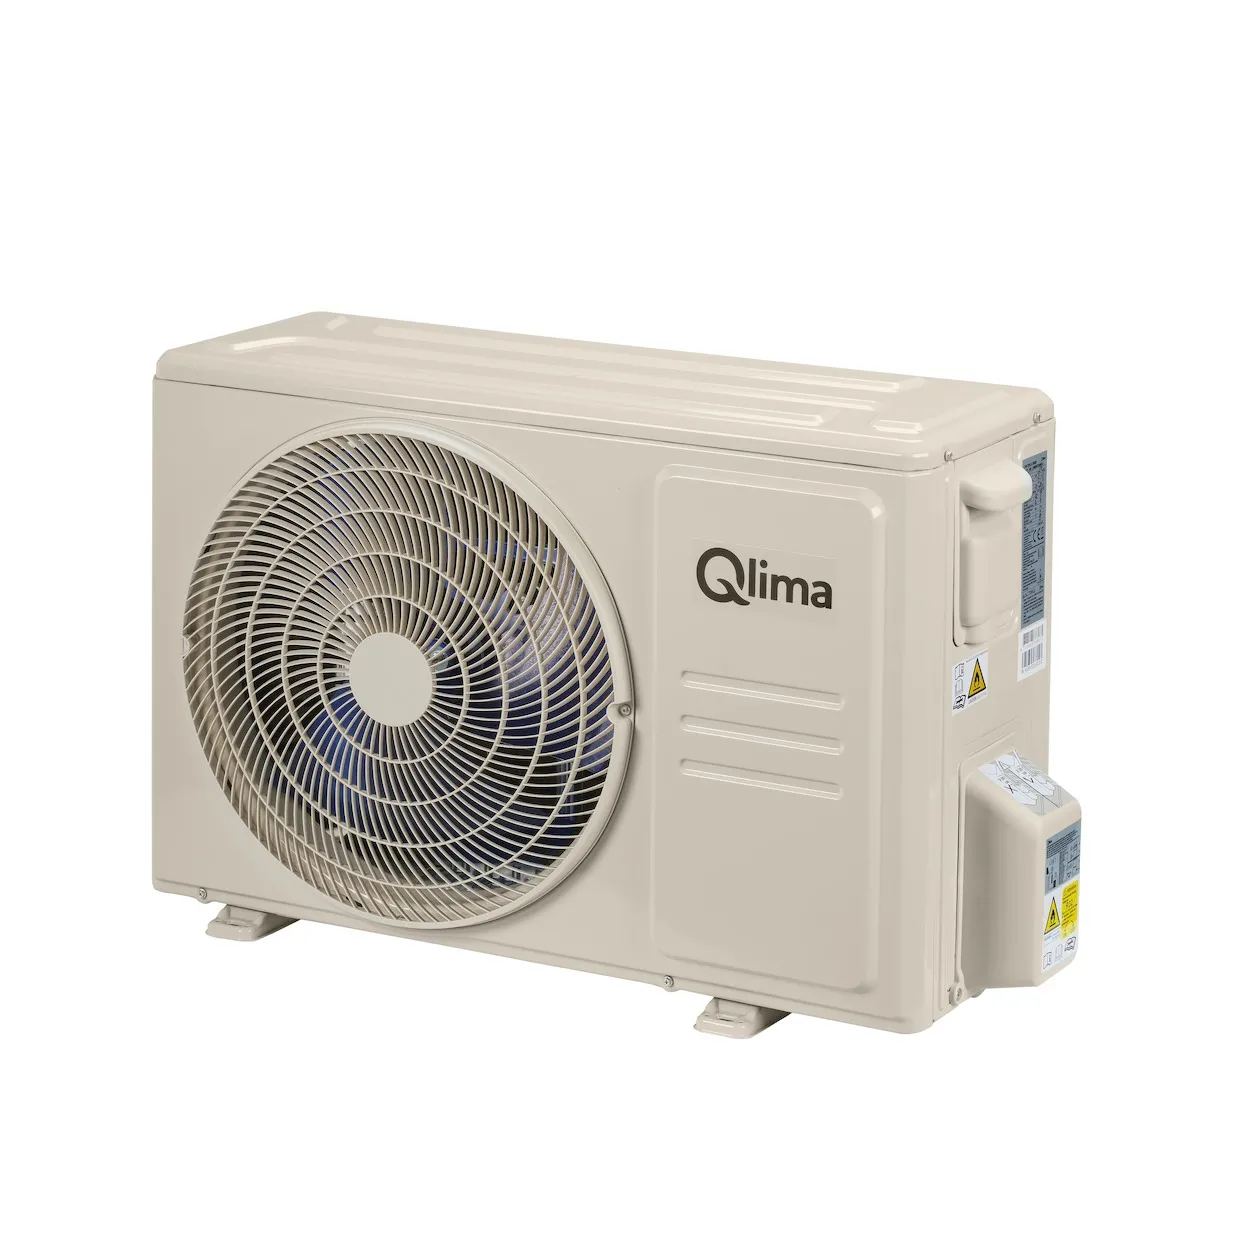 Qlima SC 6026 compleet (met snelkoppeling)